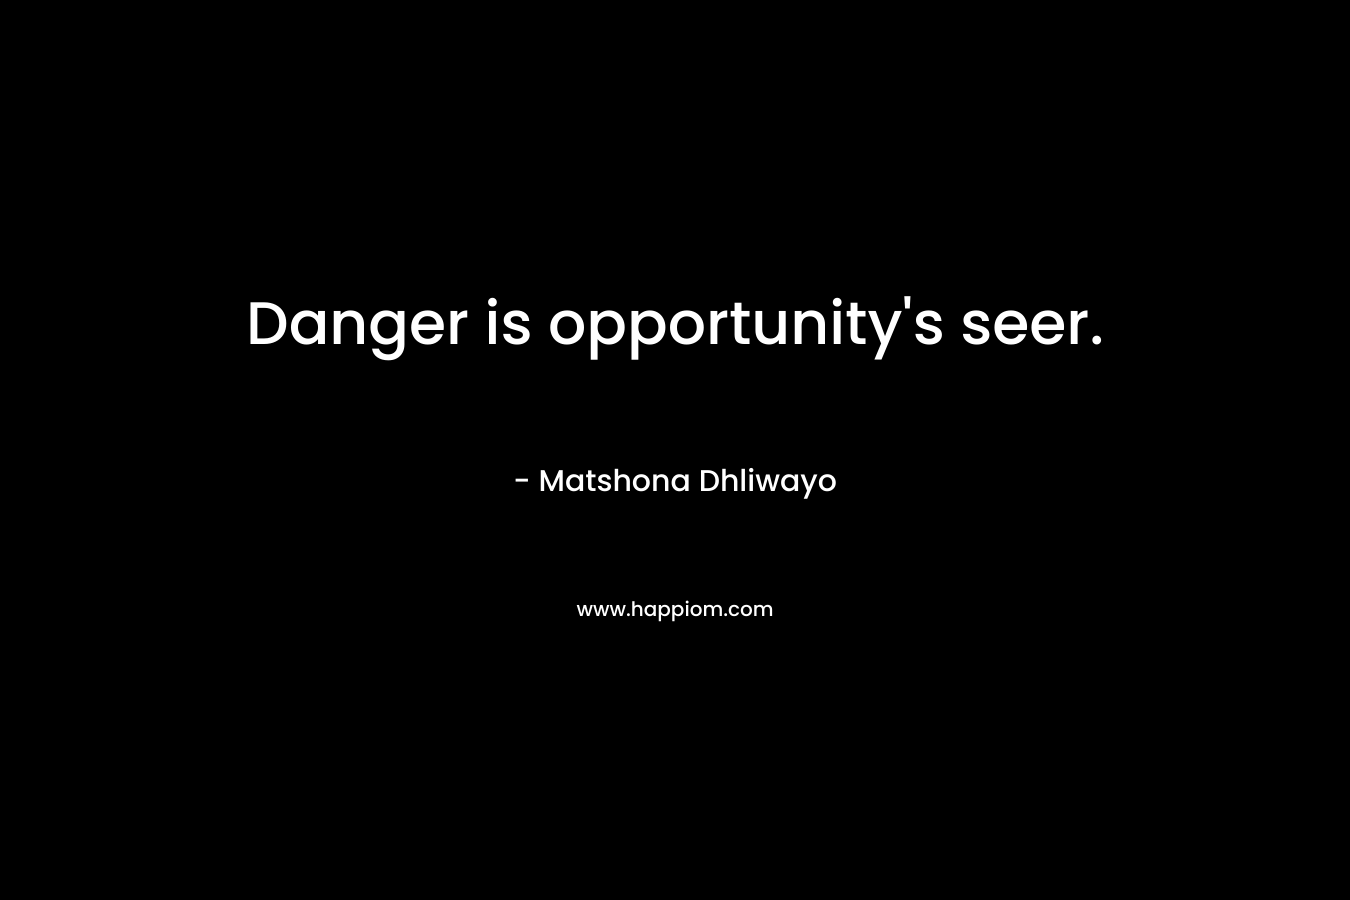 Danger is opportunity's seer.